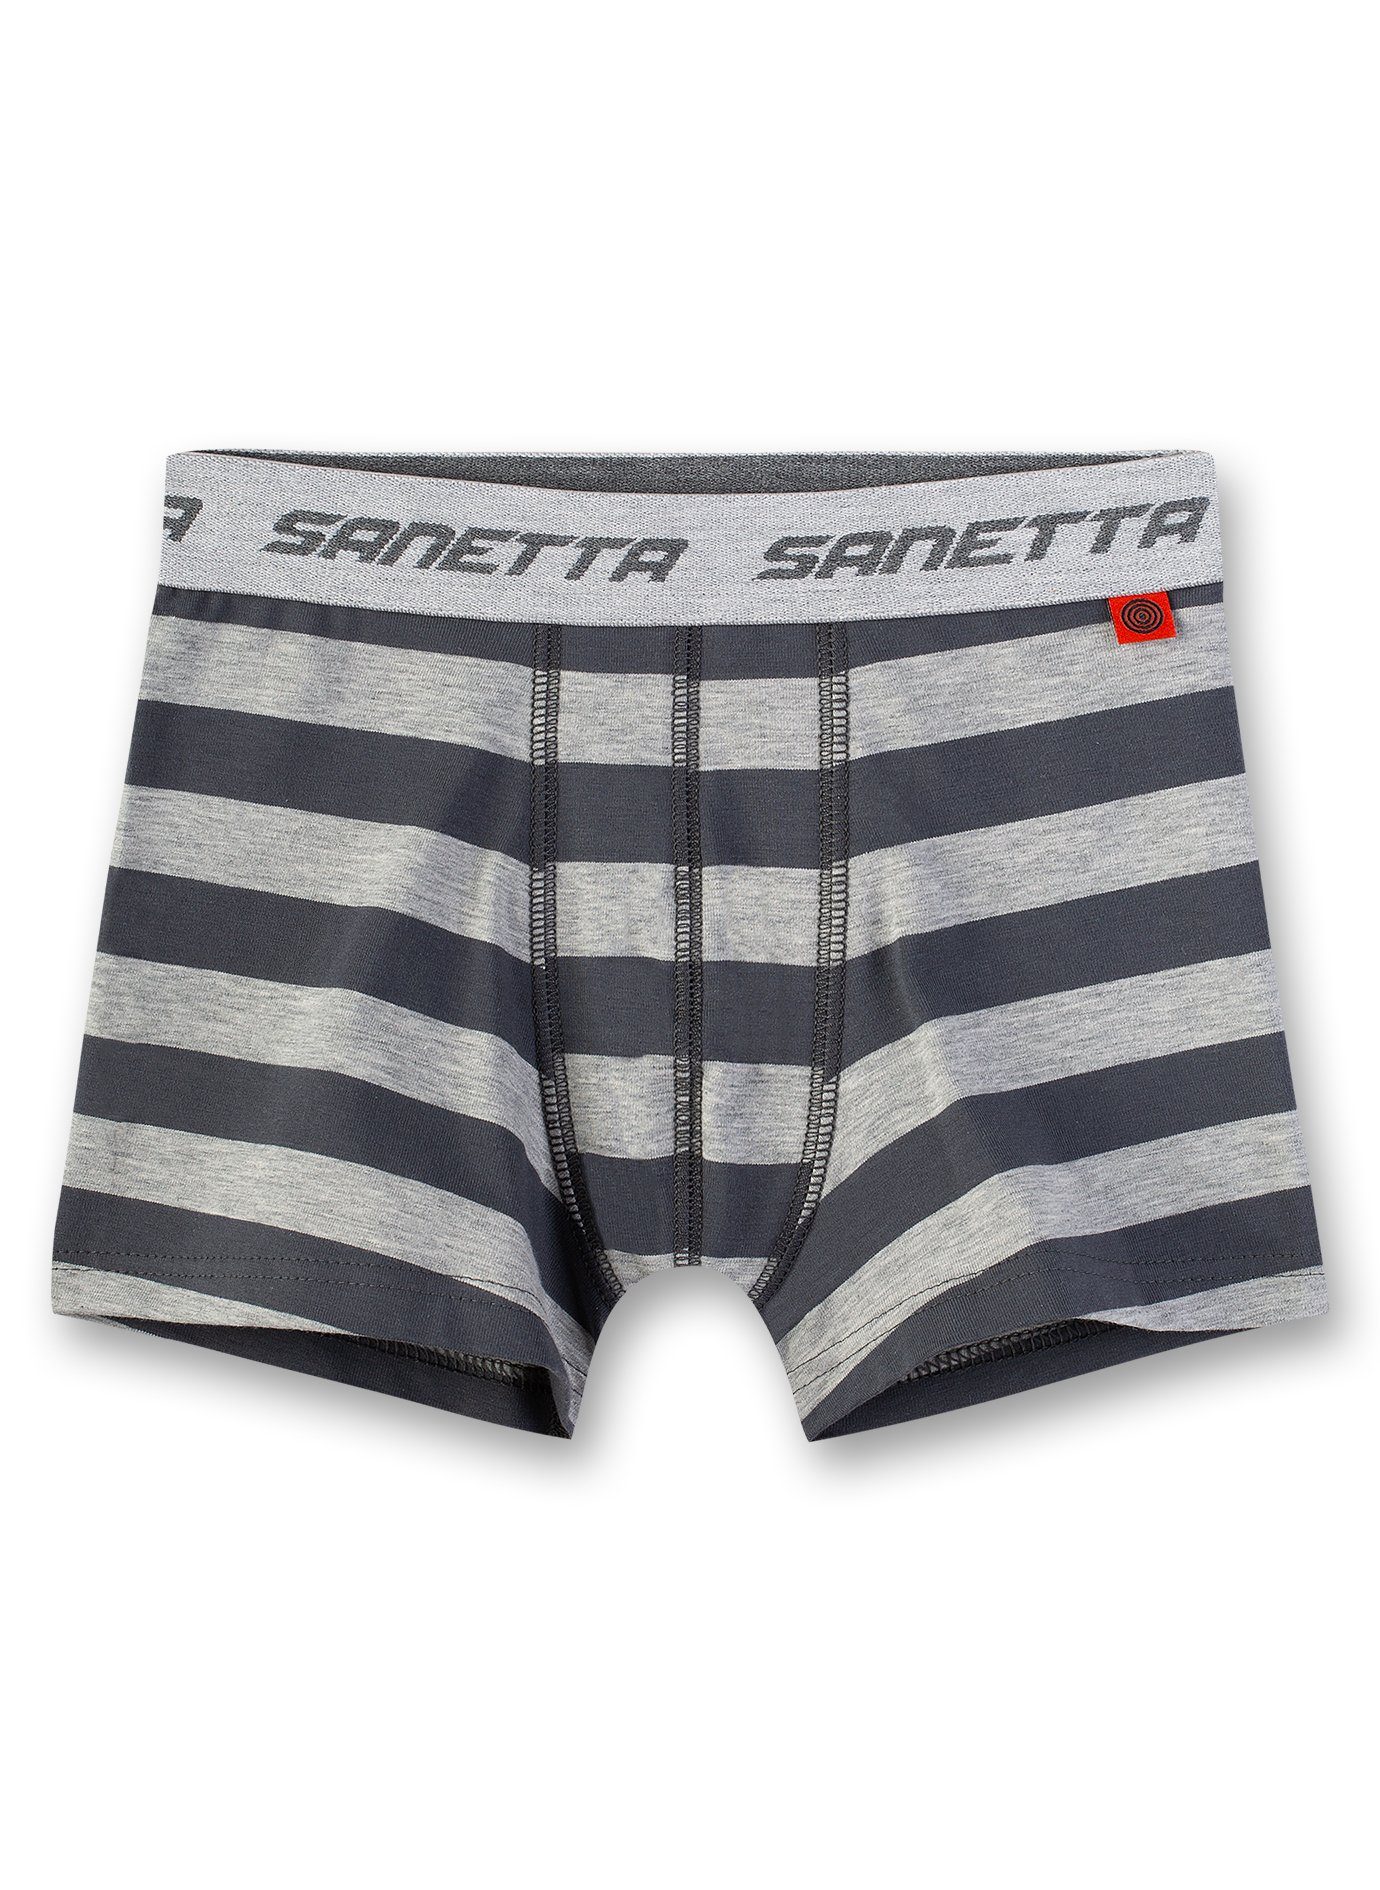 grau - Sanetta Shorts Jungen Boxer Unterhose, gestreift Pants,